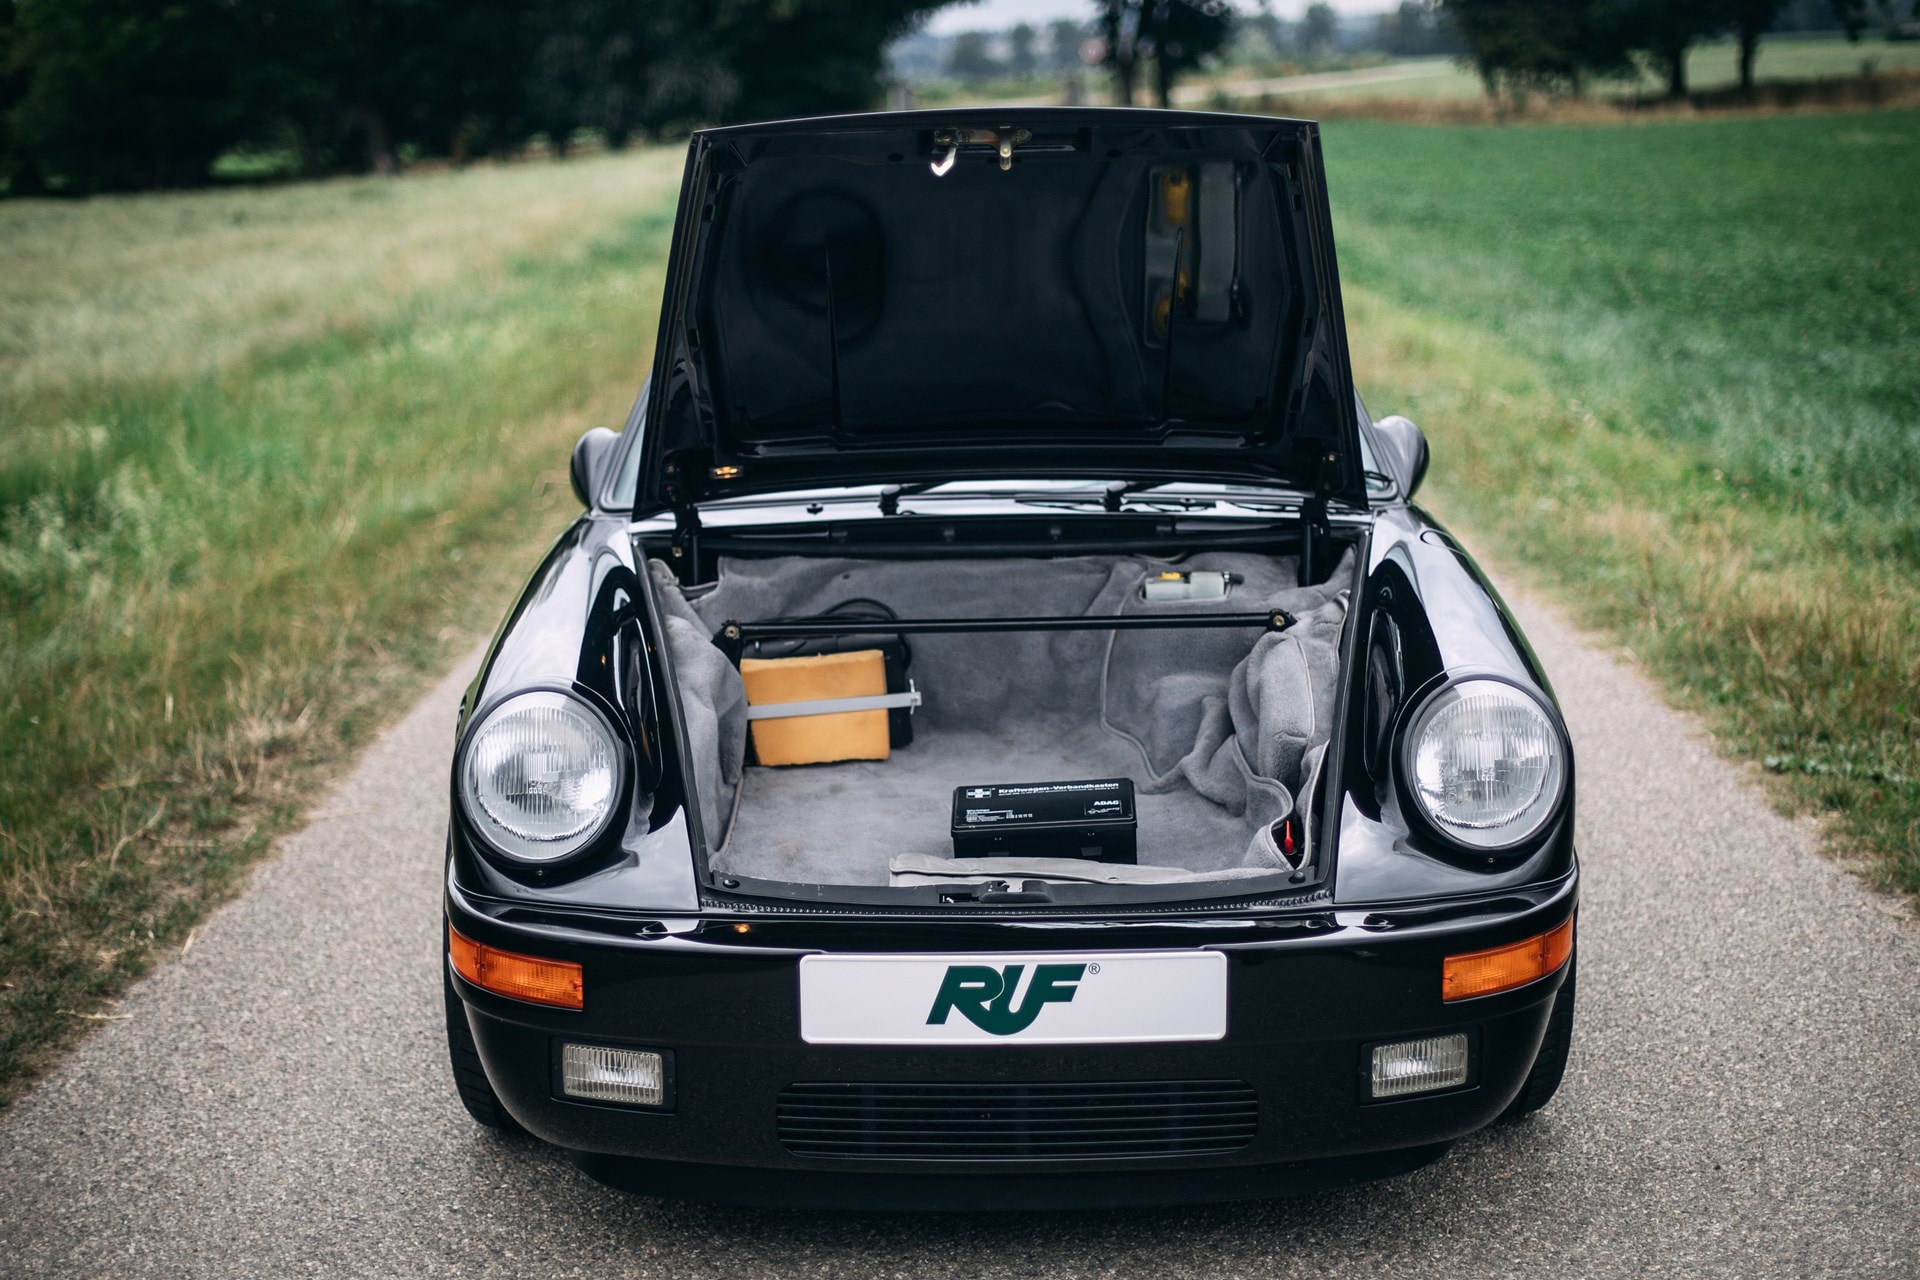 Porsche 911をベースにした1980年代後期の公道最速車両 RUF CTR  「Ferrari」や「Lamborghini」をも凌駕したヴィンテージスポーツカーの傑作 1939年創業の「RUF（ルーフ）」は、ただの「Porsche（ポルシェ）」のチューニングメーカーではない。排気ガスや耐久性などの社会的責任を持つことからドイツ自動車工業会への所属が認められており、Porsche 911をベースとしながらも車体、シャシー、エンジンの全てを徹底的に改良したCTRは、今なお名車としてクルマ好きの脳裏にその存在が刻まれている。  それもそのはず、CTRは1989年当時、市販車として購入できるモデルの最速レコードを保持していたのだ。「Ferrari（フェラリー）」の288GTO、「Mercedes-AMG（メルセデスAMG）」の560SEC 6.0-4V、「Lamborghini（ランボルギーニ）」のCountach、「Porsche」の959など、各メーカーがこぞってスペックの高いモデルを世に送りこんでいたあの時代、イエローバードの愛称で親しまれるCTRは「Road & Track」誌の市販車最速企画で「Ferrari」のF40が持っていた323km/hを塗り替える339.8km/hを記録し、その名を世界に知らしめた。  そんな4輪乗りのロマンとも言える一台より、故障もリストアもされていないオリジナル車両が世界最高峰のオークション「RM Sotheby's」に登場。ここまで状態が良く、52,200kmしか走行していないCTRが市場に姿を現すことは金輪際ないかもしれない。  クルマ好きでもそうでなくとも、その洗練されたプロダクトデザインを是非、上のフォトギャラリーから堪能してみてはいかがだろうか。  推定落札価格の2倍の値がついた「Mercedes-Benz」の300 SL 後期モデルや、世に出回ることのなかった1961年製の幻のオープンカー Plymouth Asimmetrica Concept